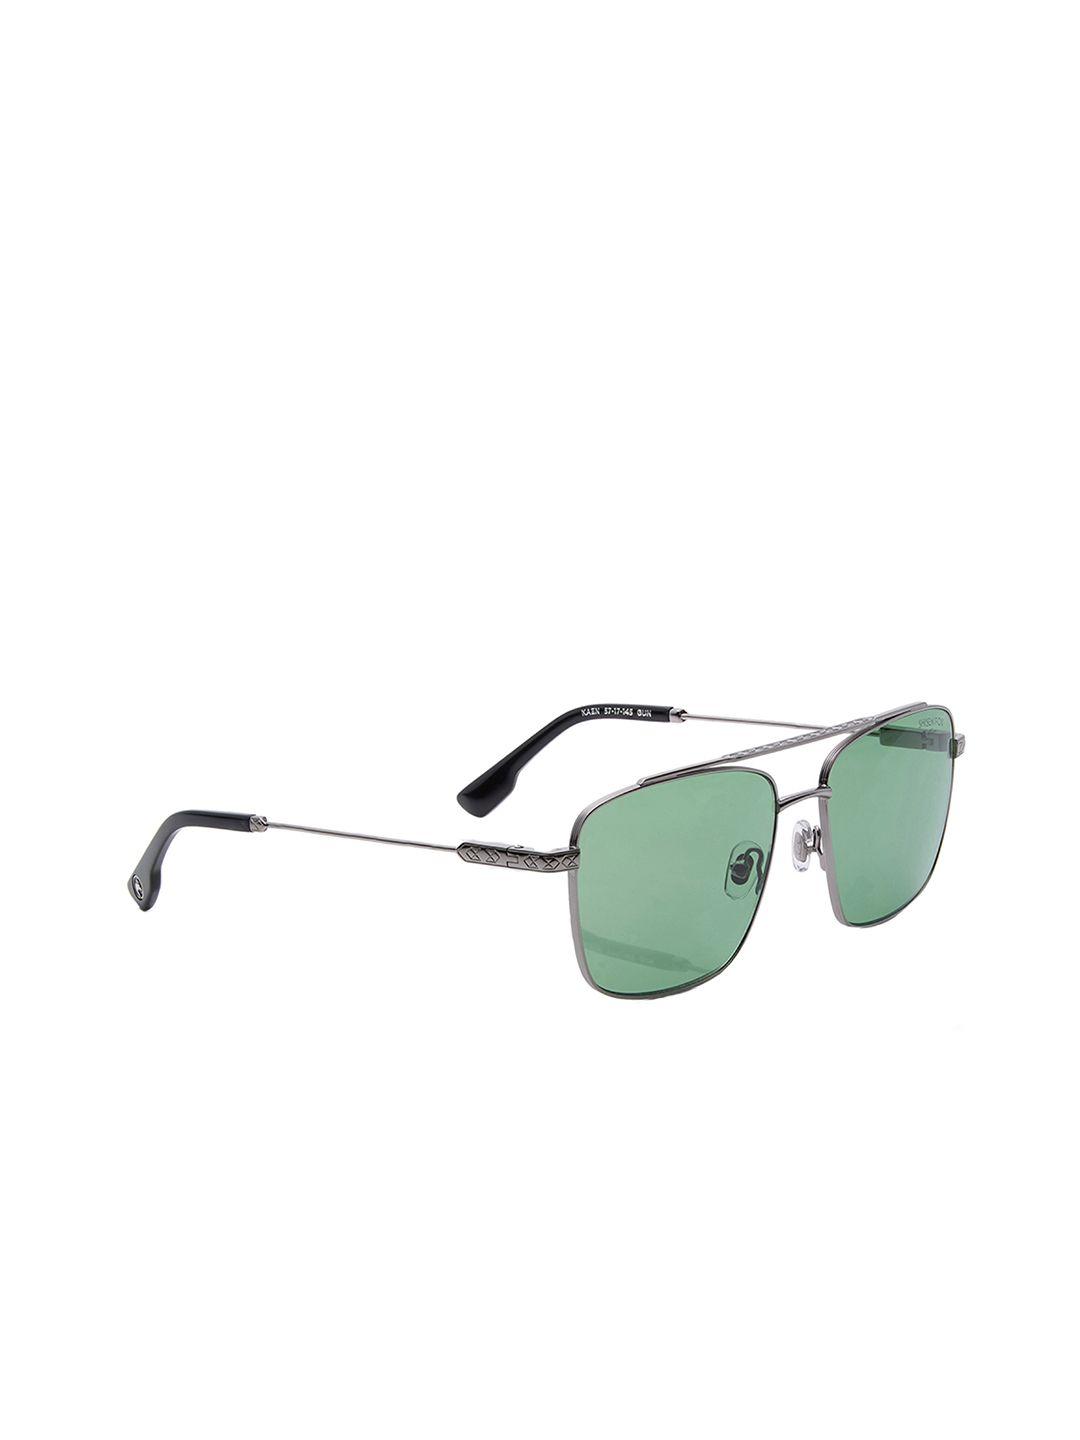 shisen fox kaen unisex rectangle sunglasses with uv protected lens sunglasses sg104